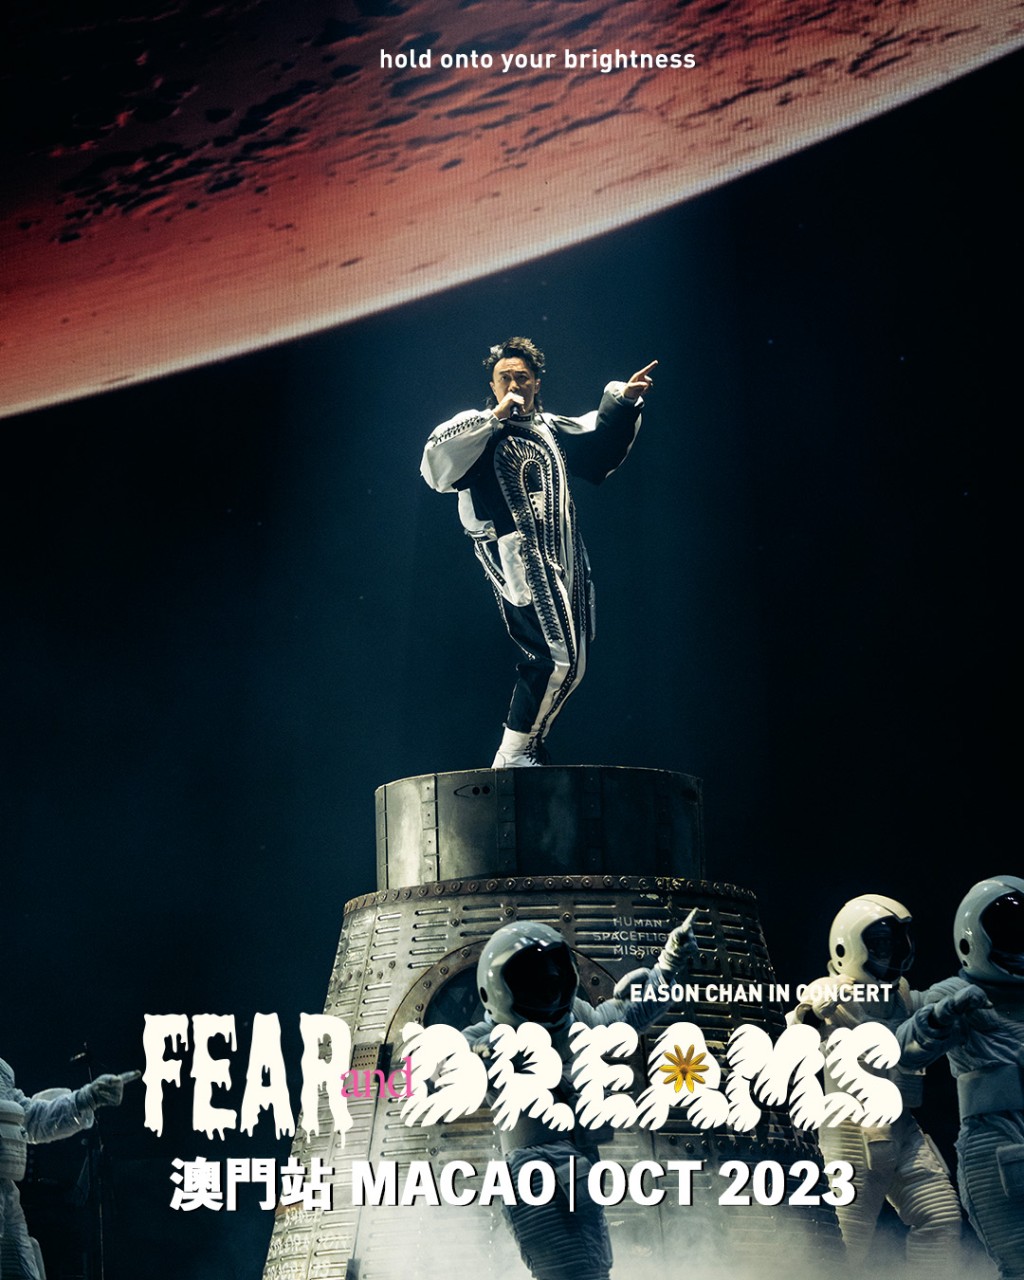 陳奕迅《FEAR AND DREAMS世界巡迴演唱會》澳門站將於8月28日售票。